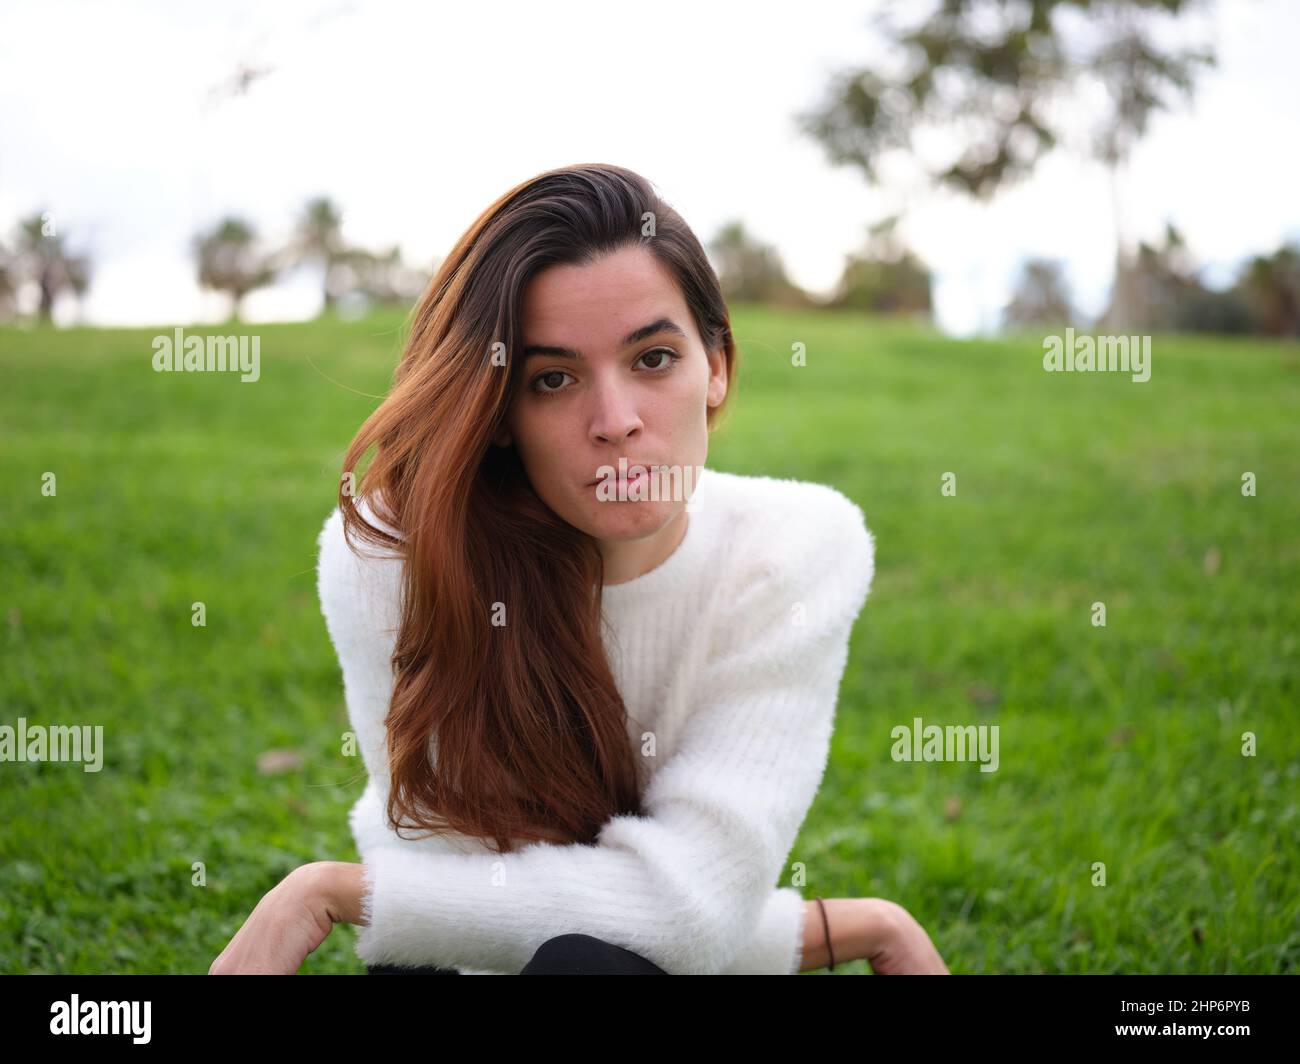 Eine wütende junge Frau im Park, die ernsthaft auf die Kamera schaut Stockfoto